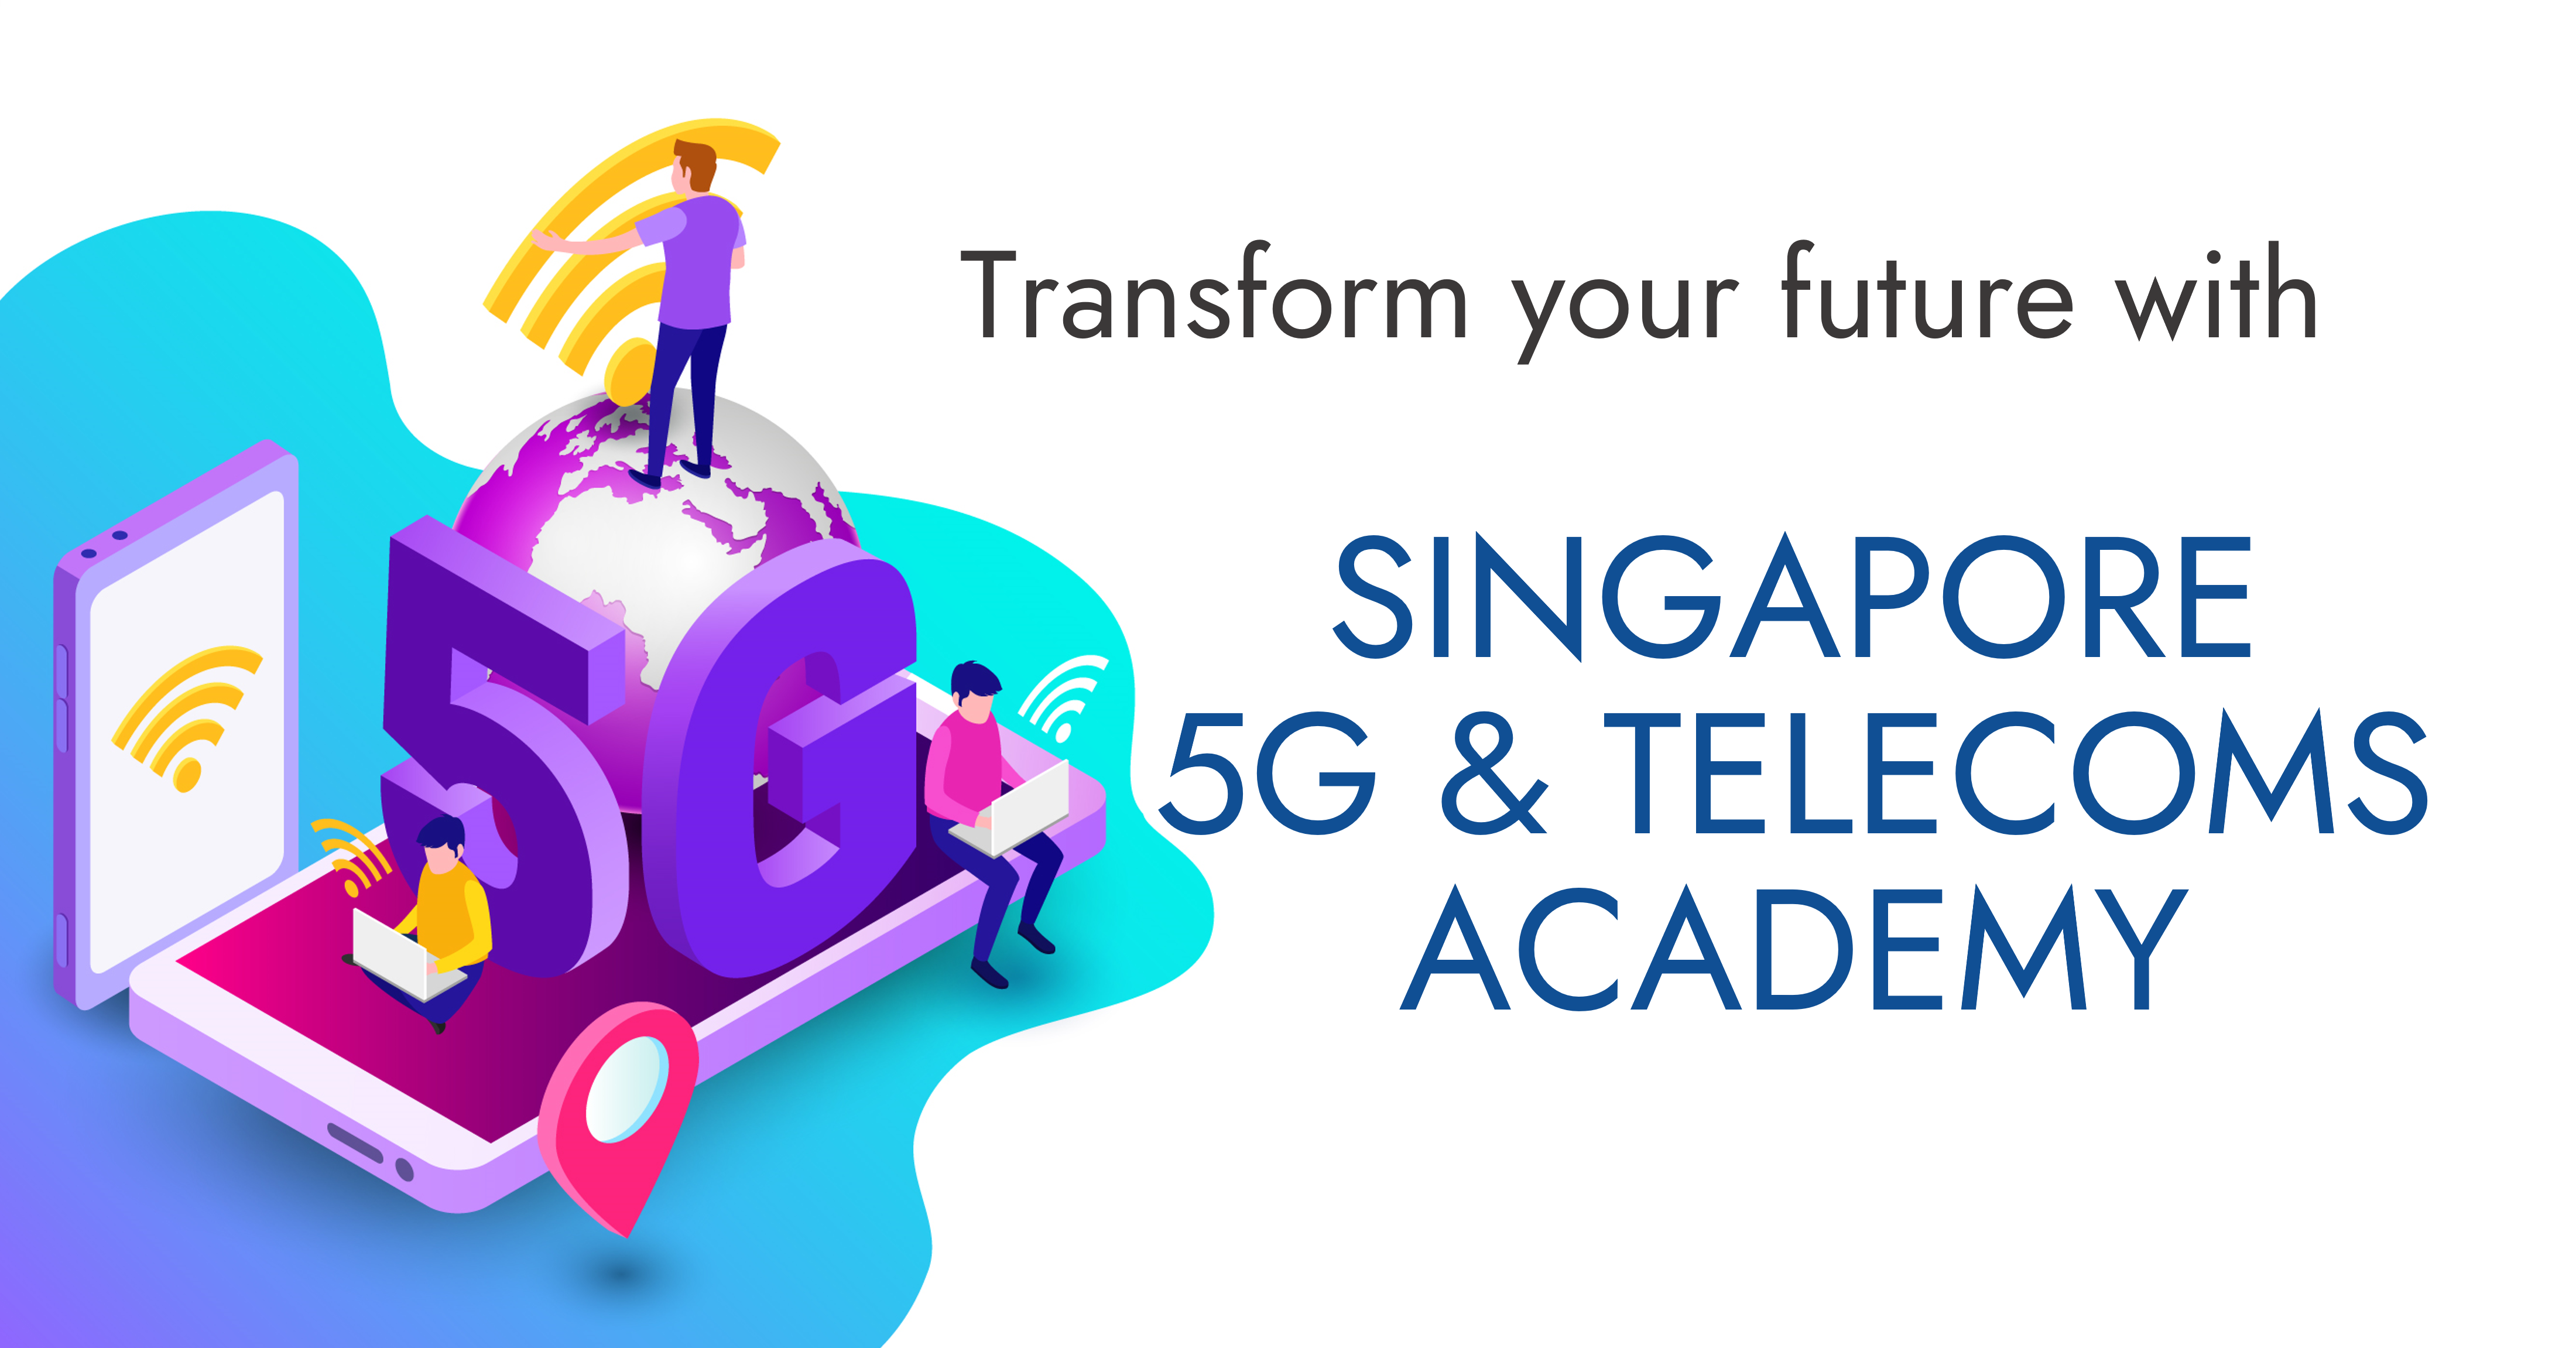 Singapore 5G & Telecoms Academy 2